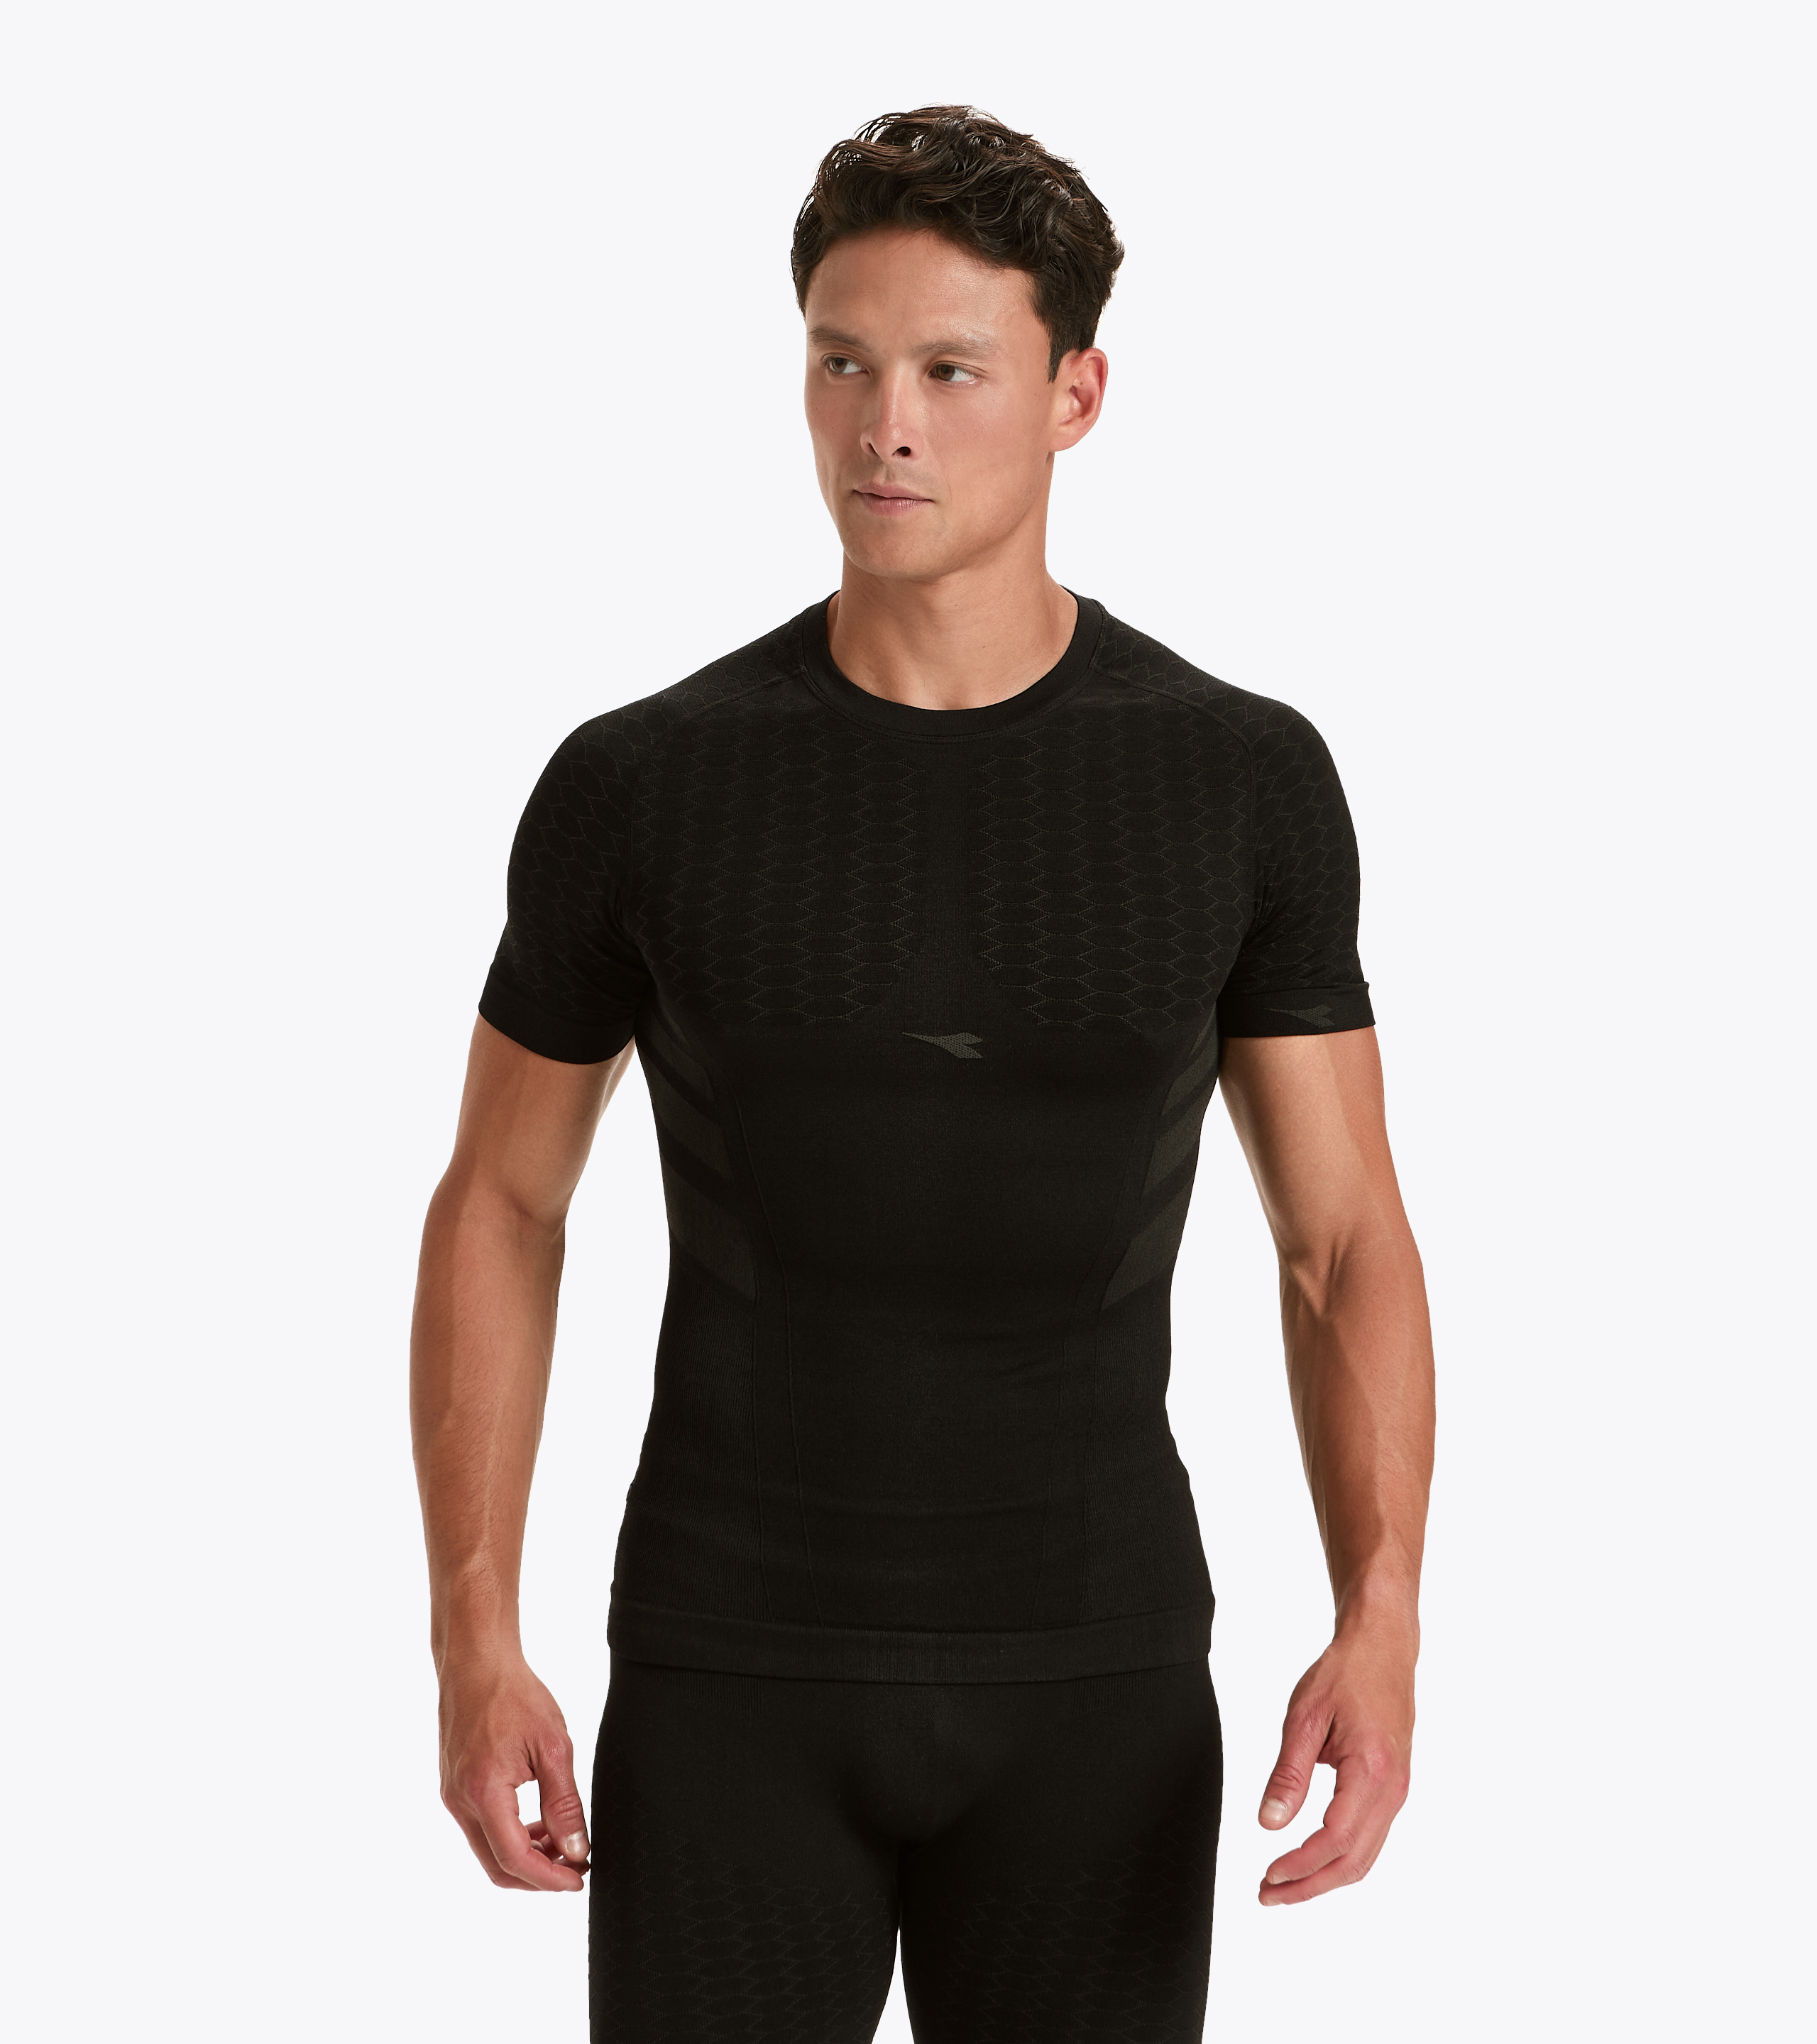 SS T-SHIRT ACT Short-sleeved training t-shirt - Men - Diadora Online Store  PT